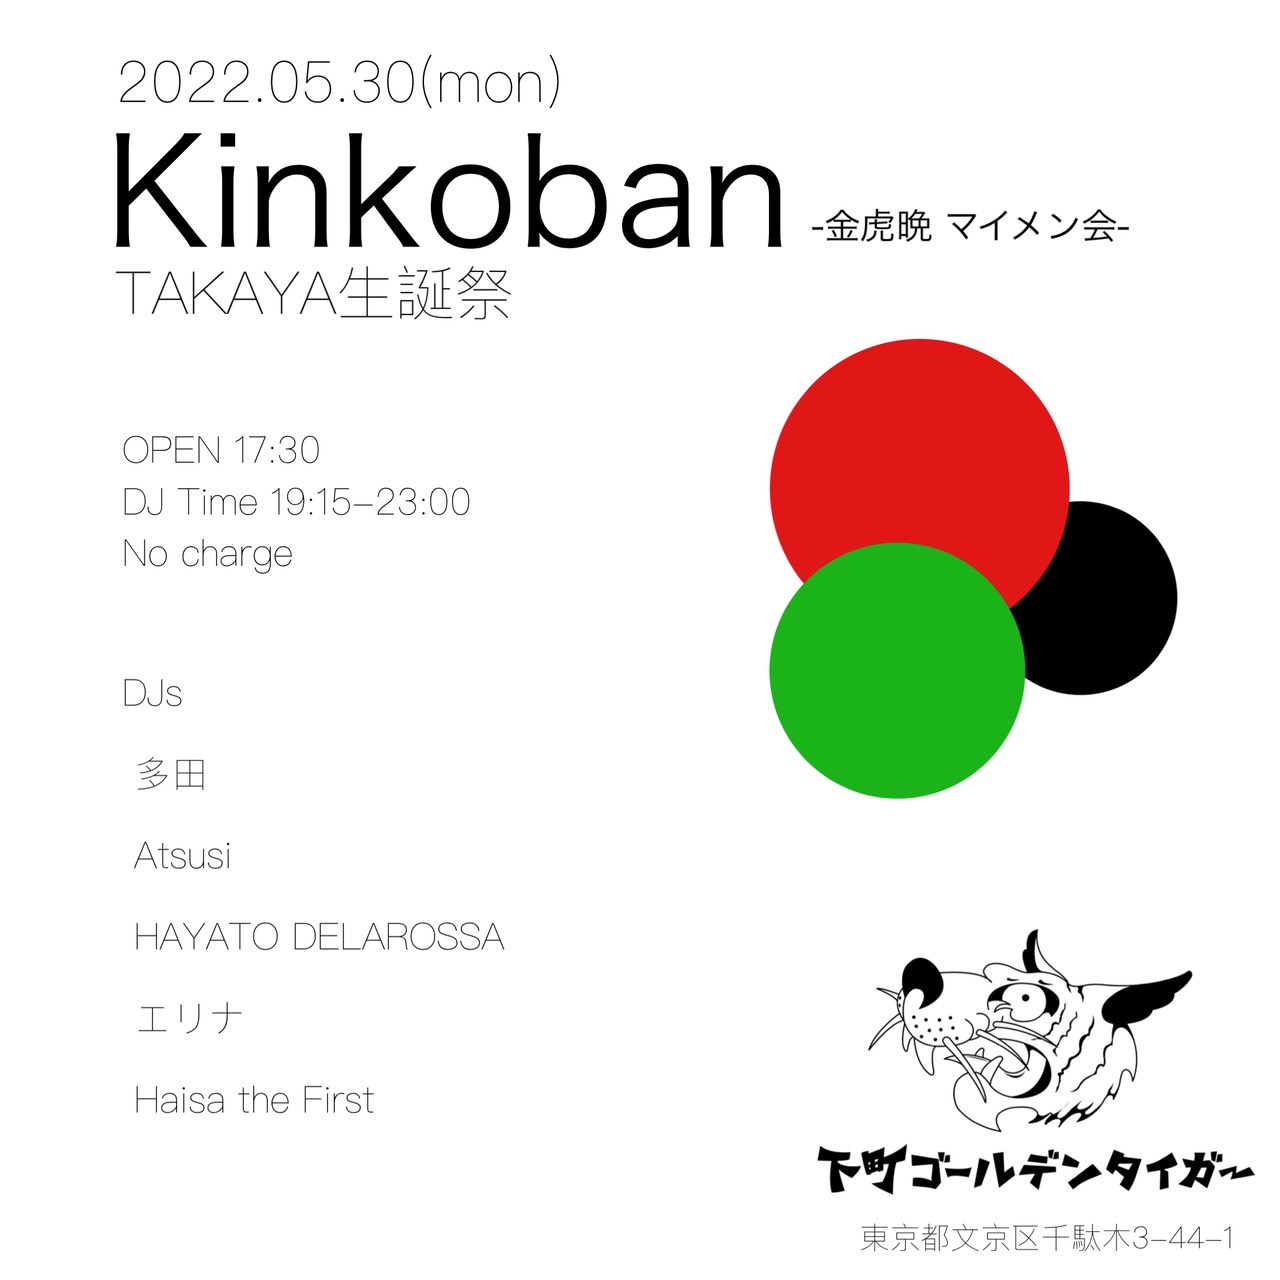 2022.05.30 Mon 「Kinkoban -金虎晩マイメン会- TAKAYA生誕祭」